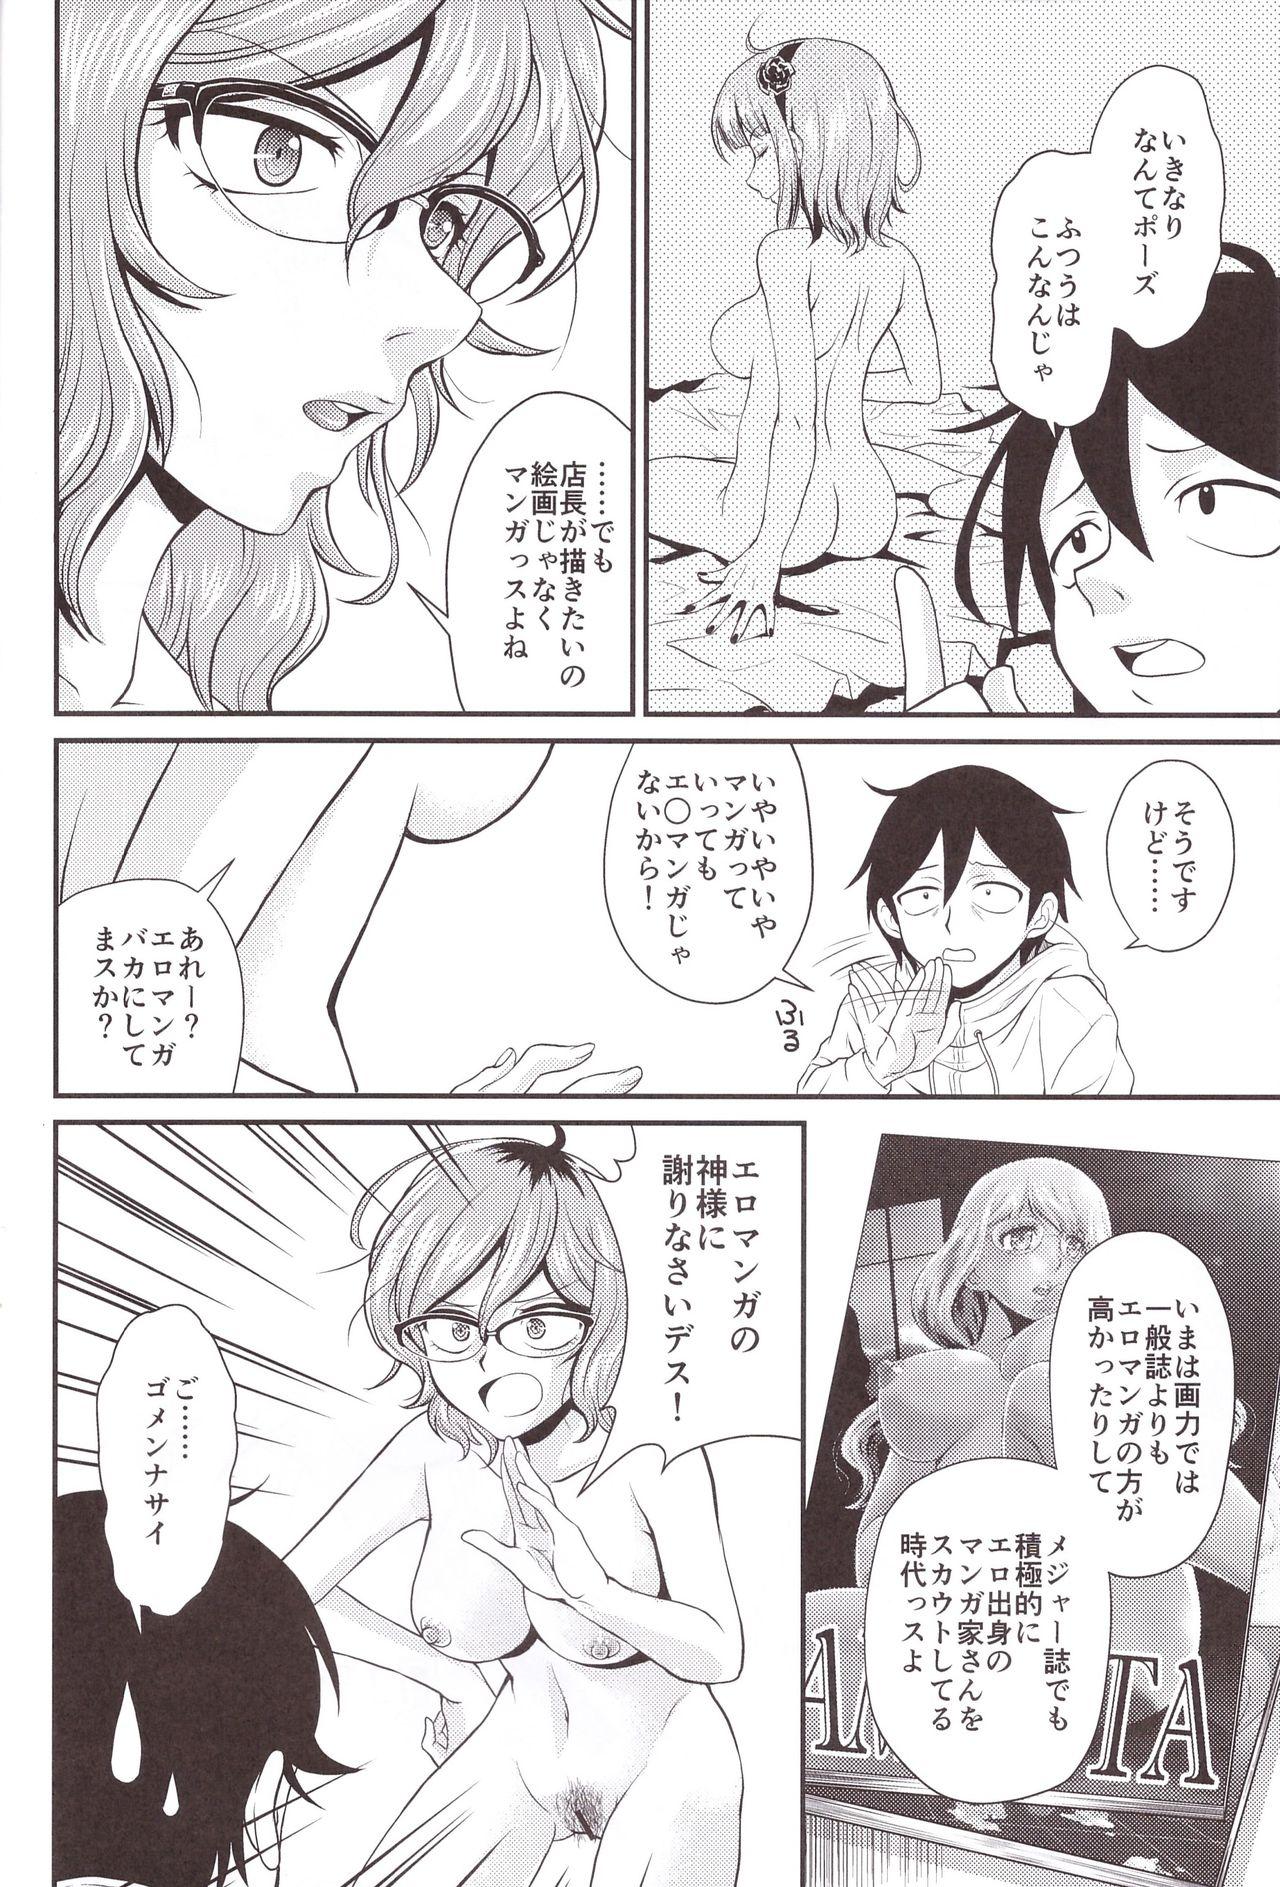 Gang Hajime-san ga Ichiban? - Dagashi kashi Rebolando - Page 8